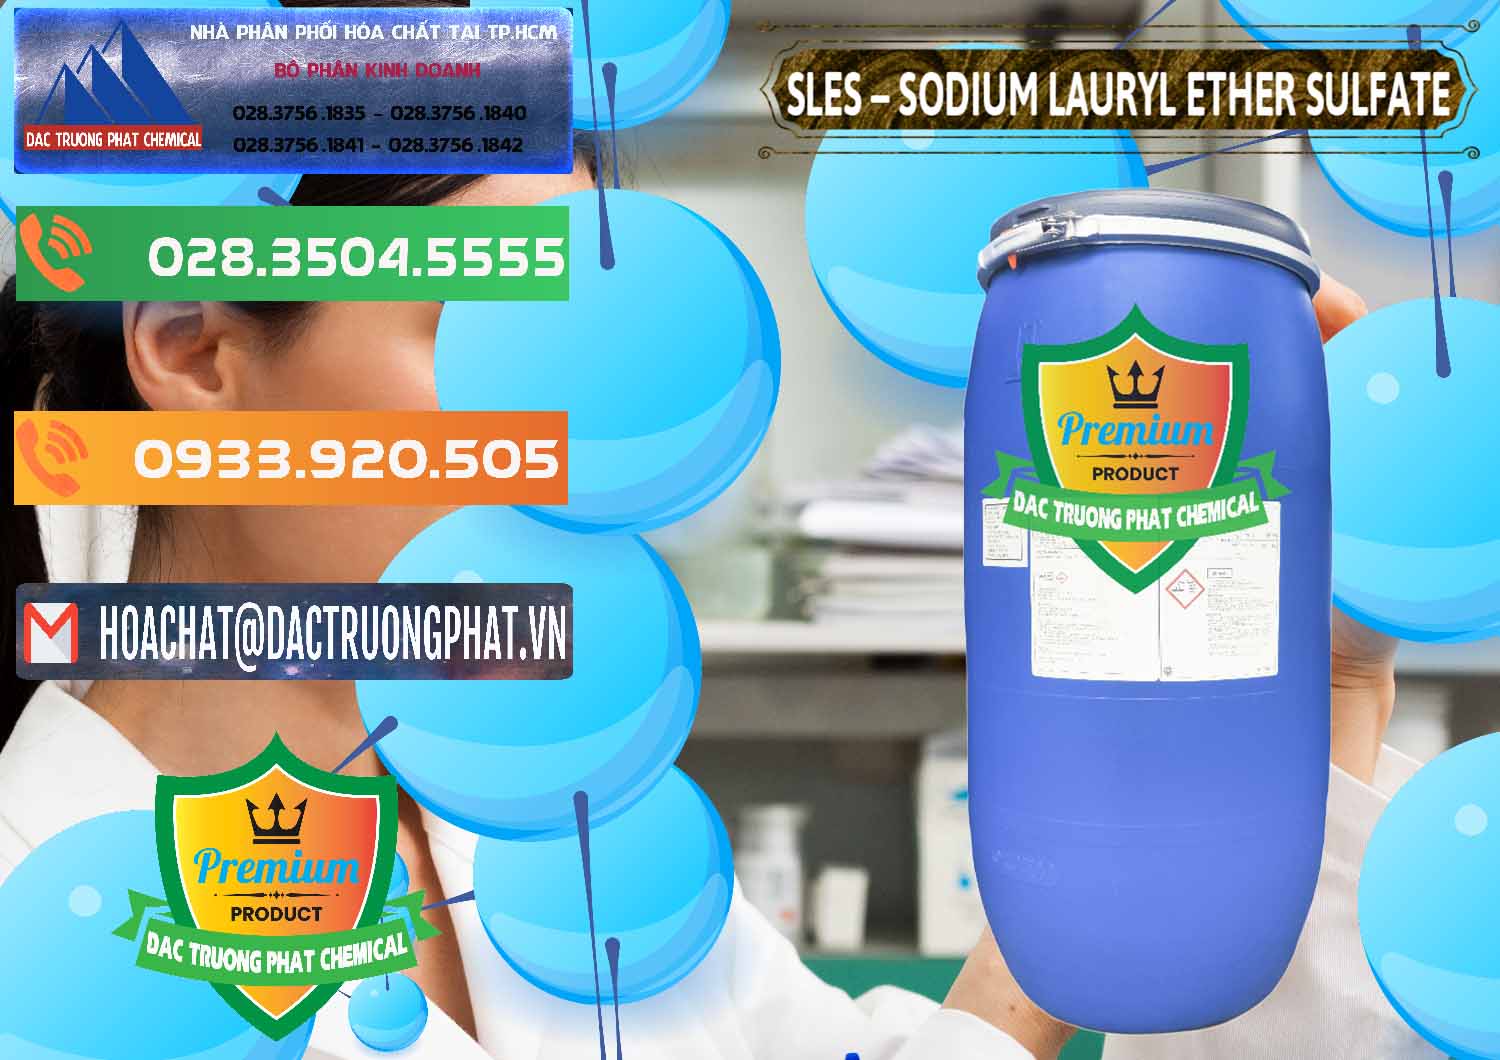 Cty chuyên cung ứng và bán Chất Tạo Bọt Sles - Sodium Lauryl Ether Sulphate Kao Indonesia - 0046 - Chuyên cung ứng & phân phối hóa chất tại TP.HCM - hoachatxulynuoc.com.vn